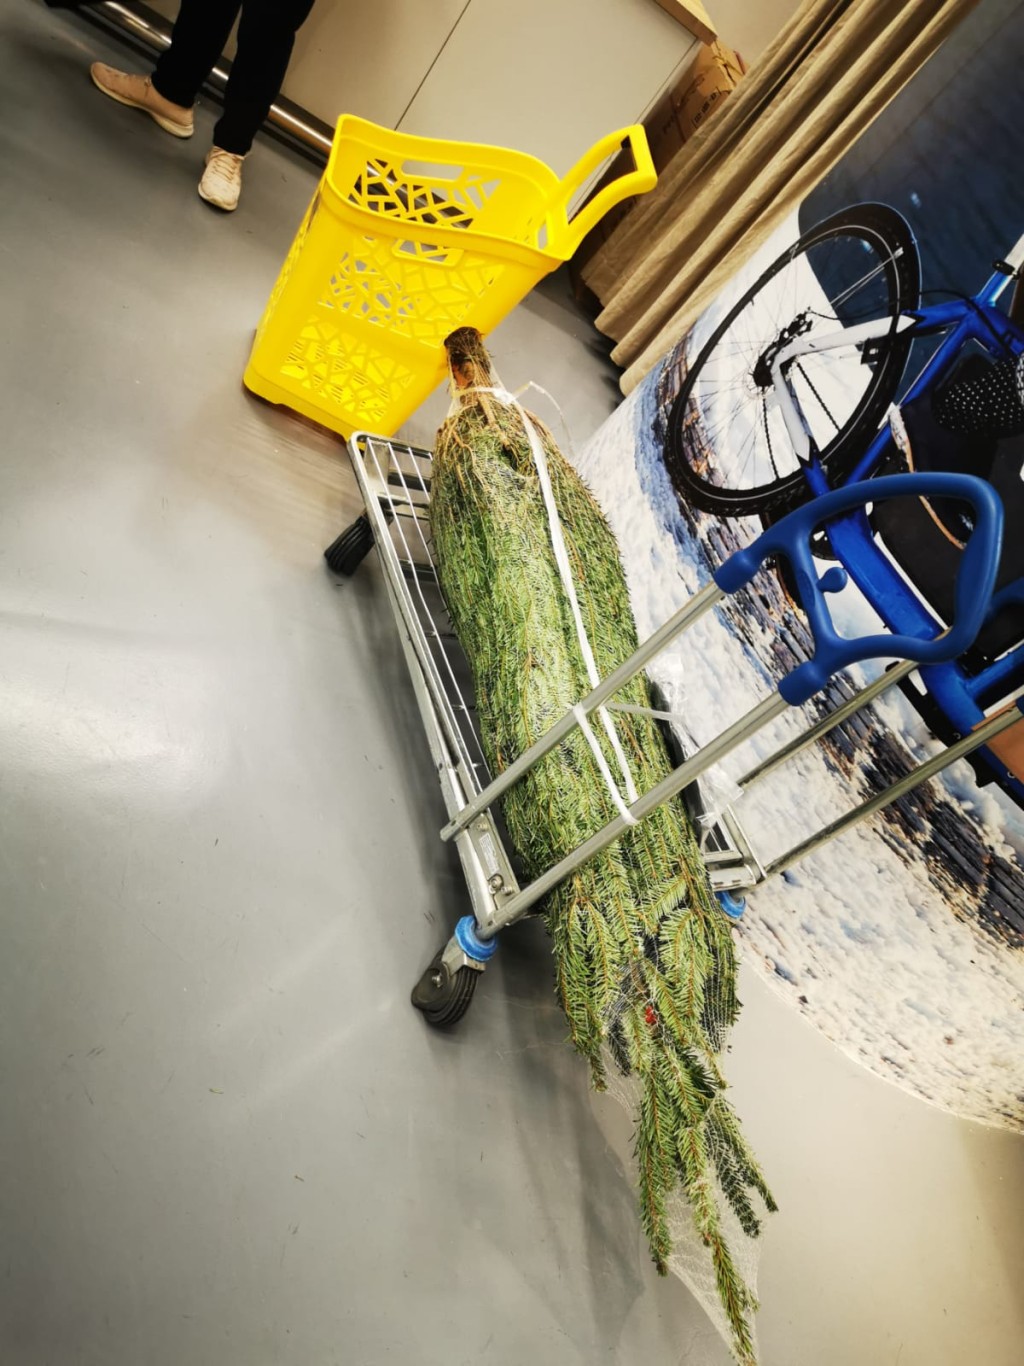 九龍灣IKEA分店現搶購真聖誕樹熱潮。(讀者提供)